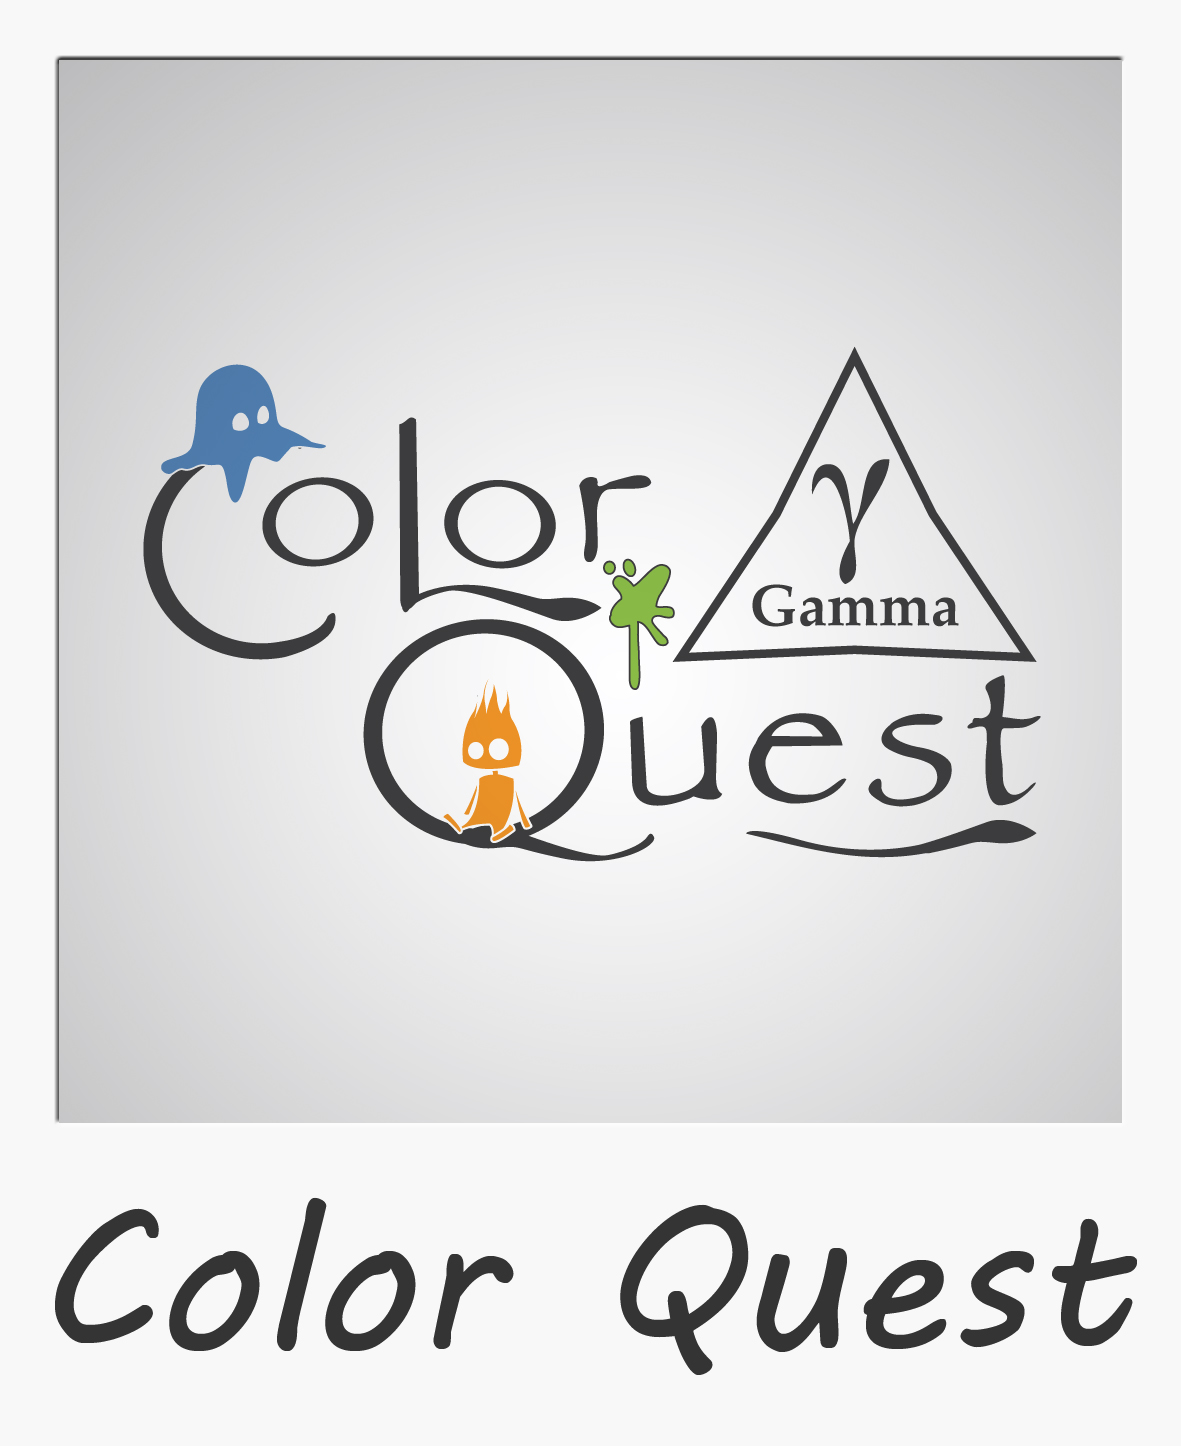 Color Quest Gamma campaign